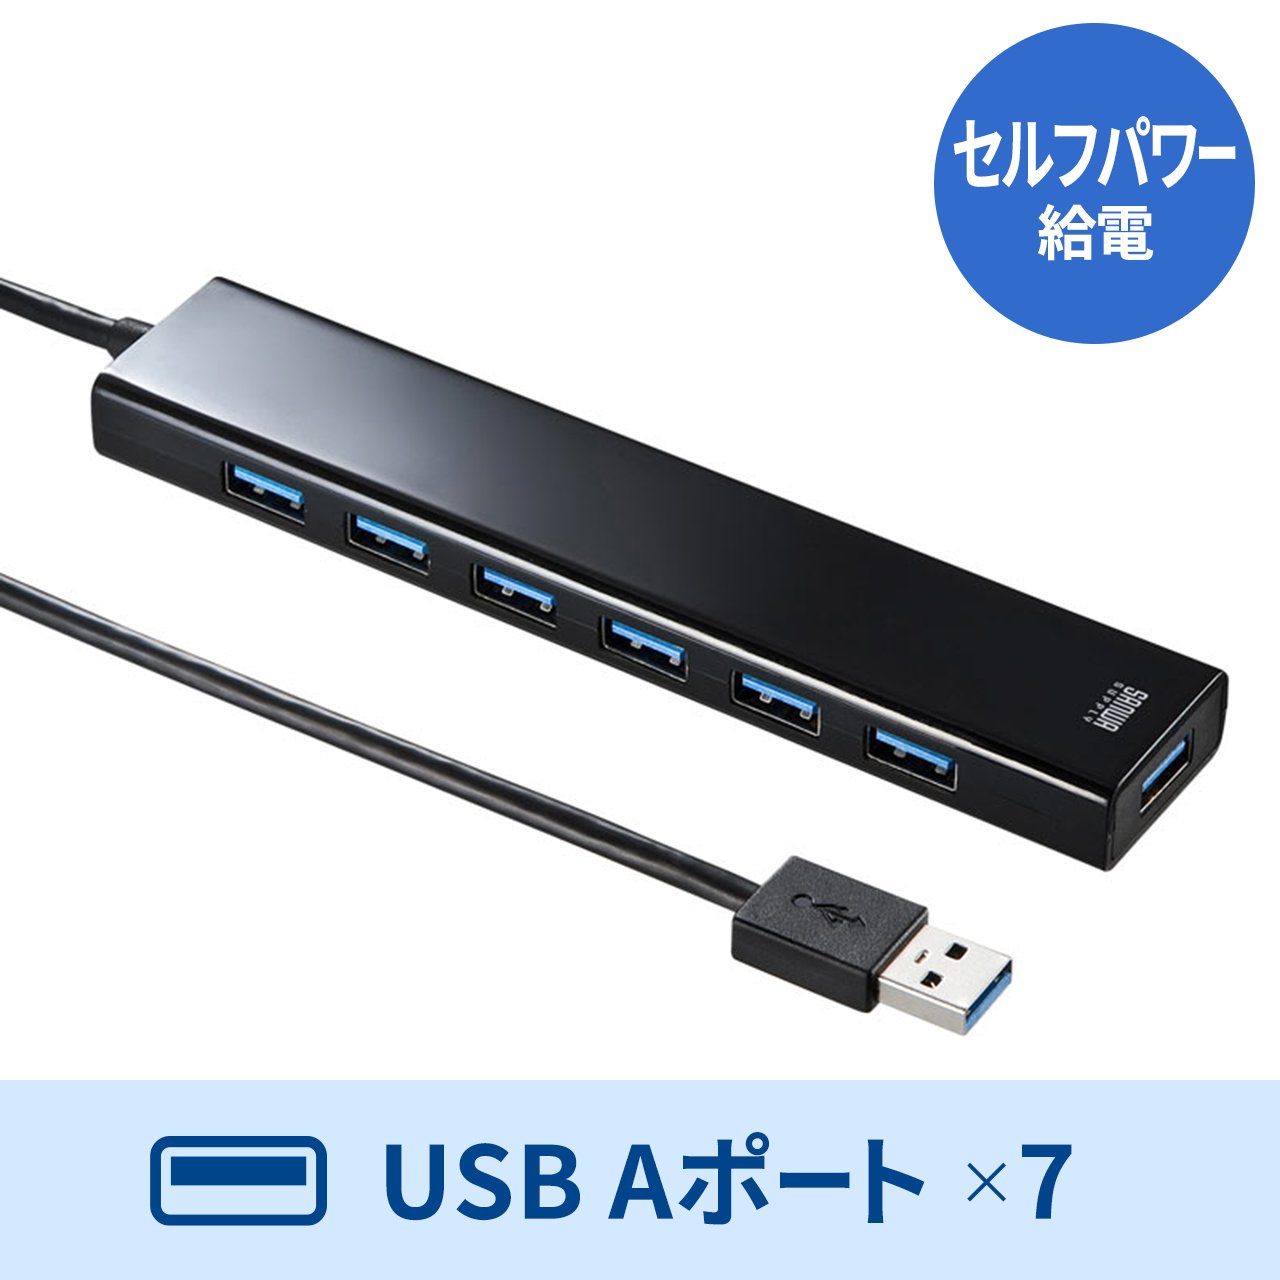 USBnu USB A 7|[gUSB3.2 Gen1}[d ACA_v^t Ztp[ 30cm ubN USB-3H703BKN